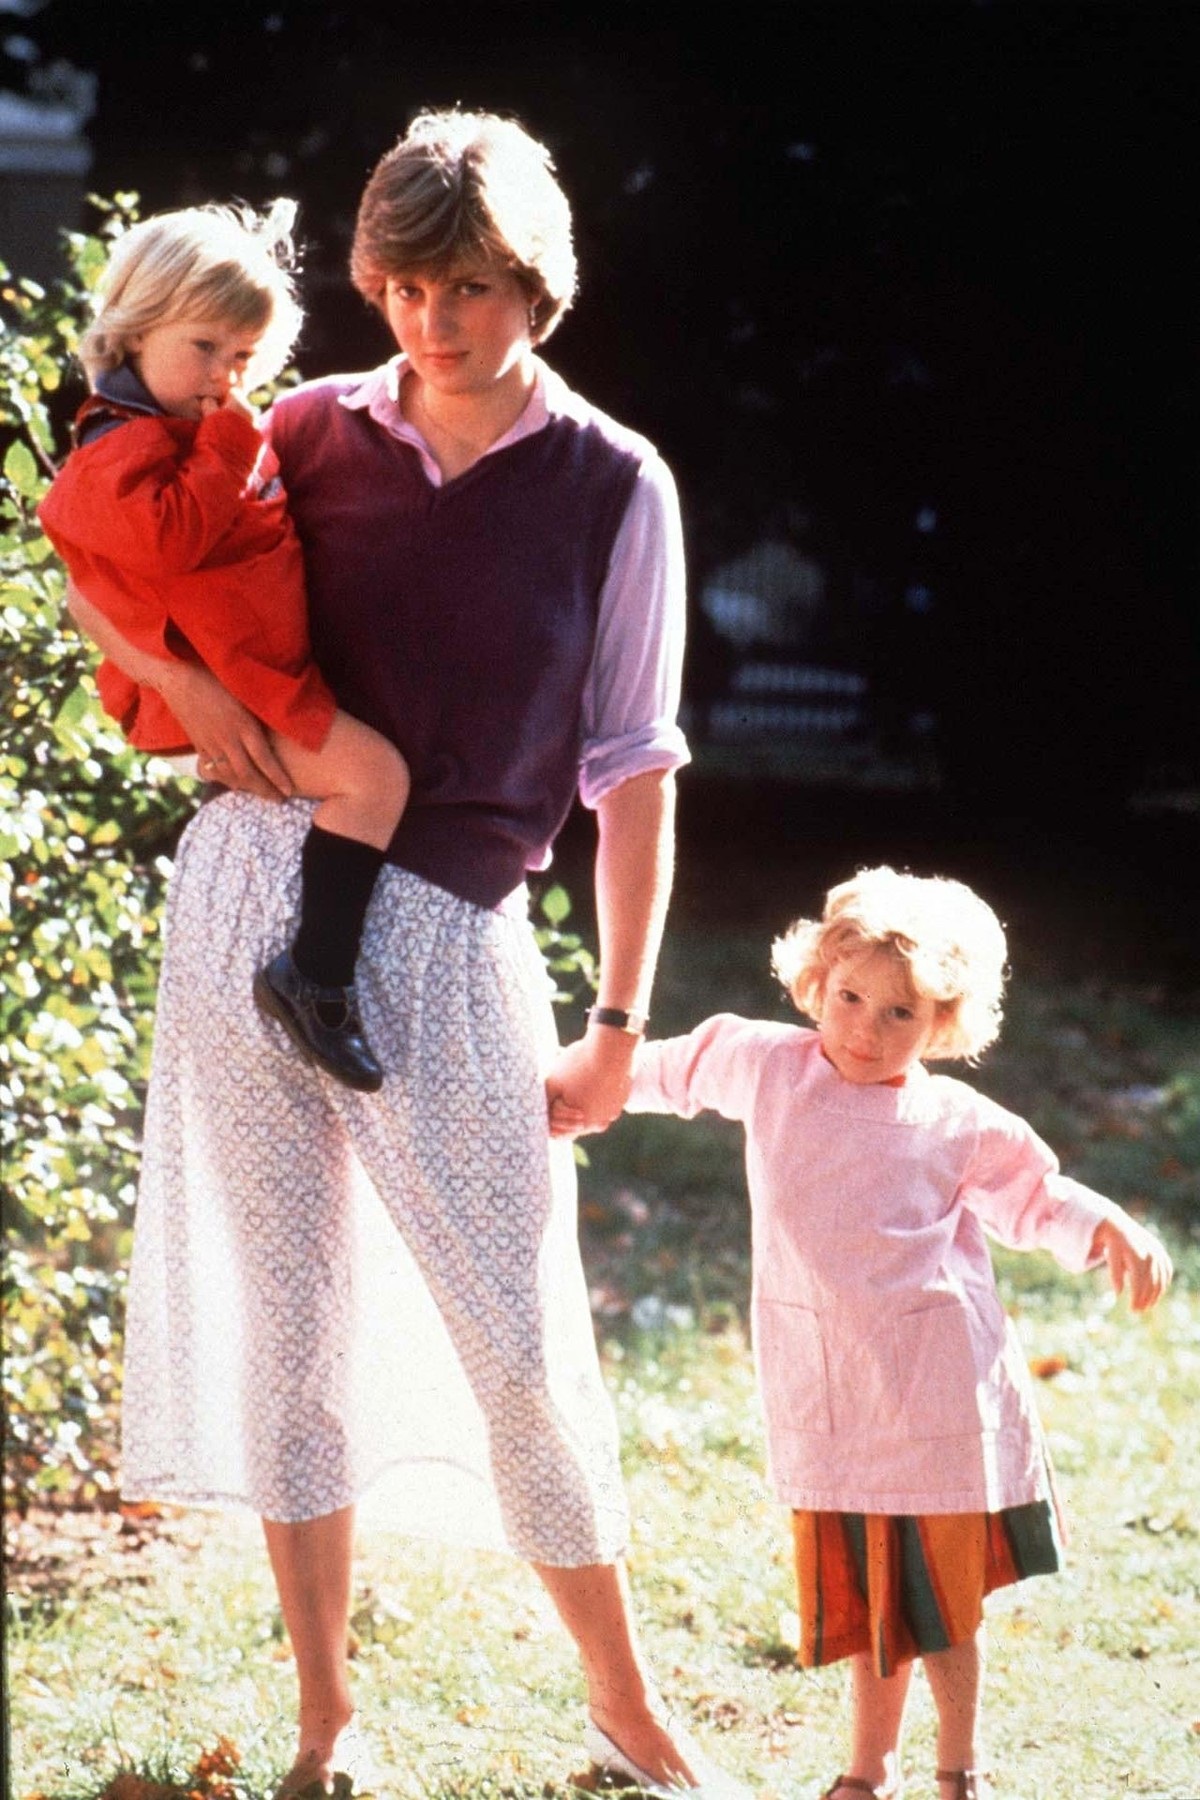 Lady Di într-o fustă cu buline și o vestă mov în timp ce ține o fetiță de mână și a alta în brațe în timp ce lucra la o școală de asistente în 1980, fiind unul dintre acele momente emblematice ale Prințesei Diana